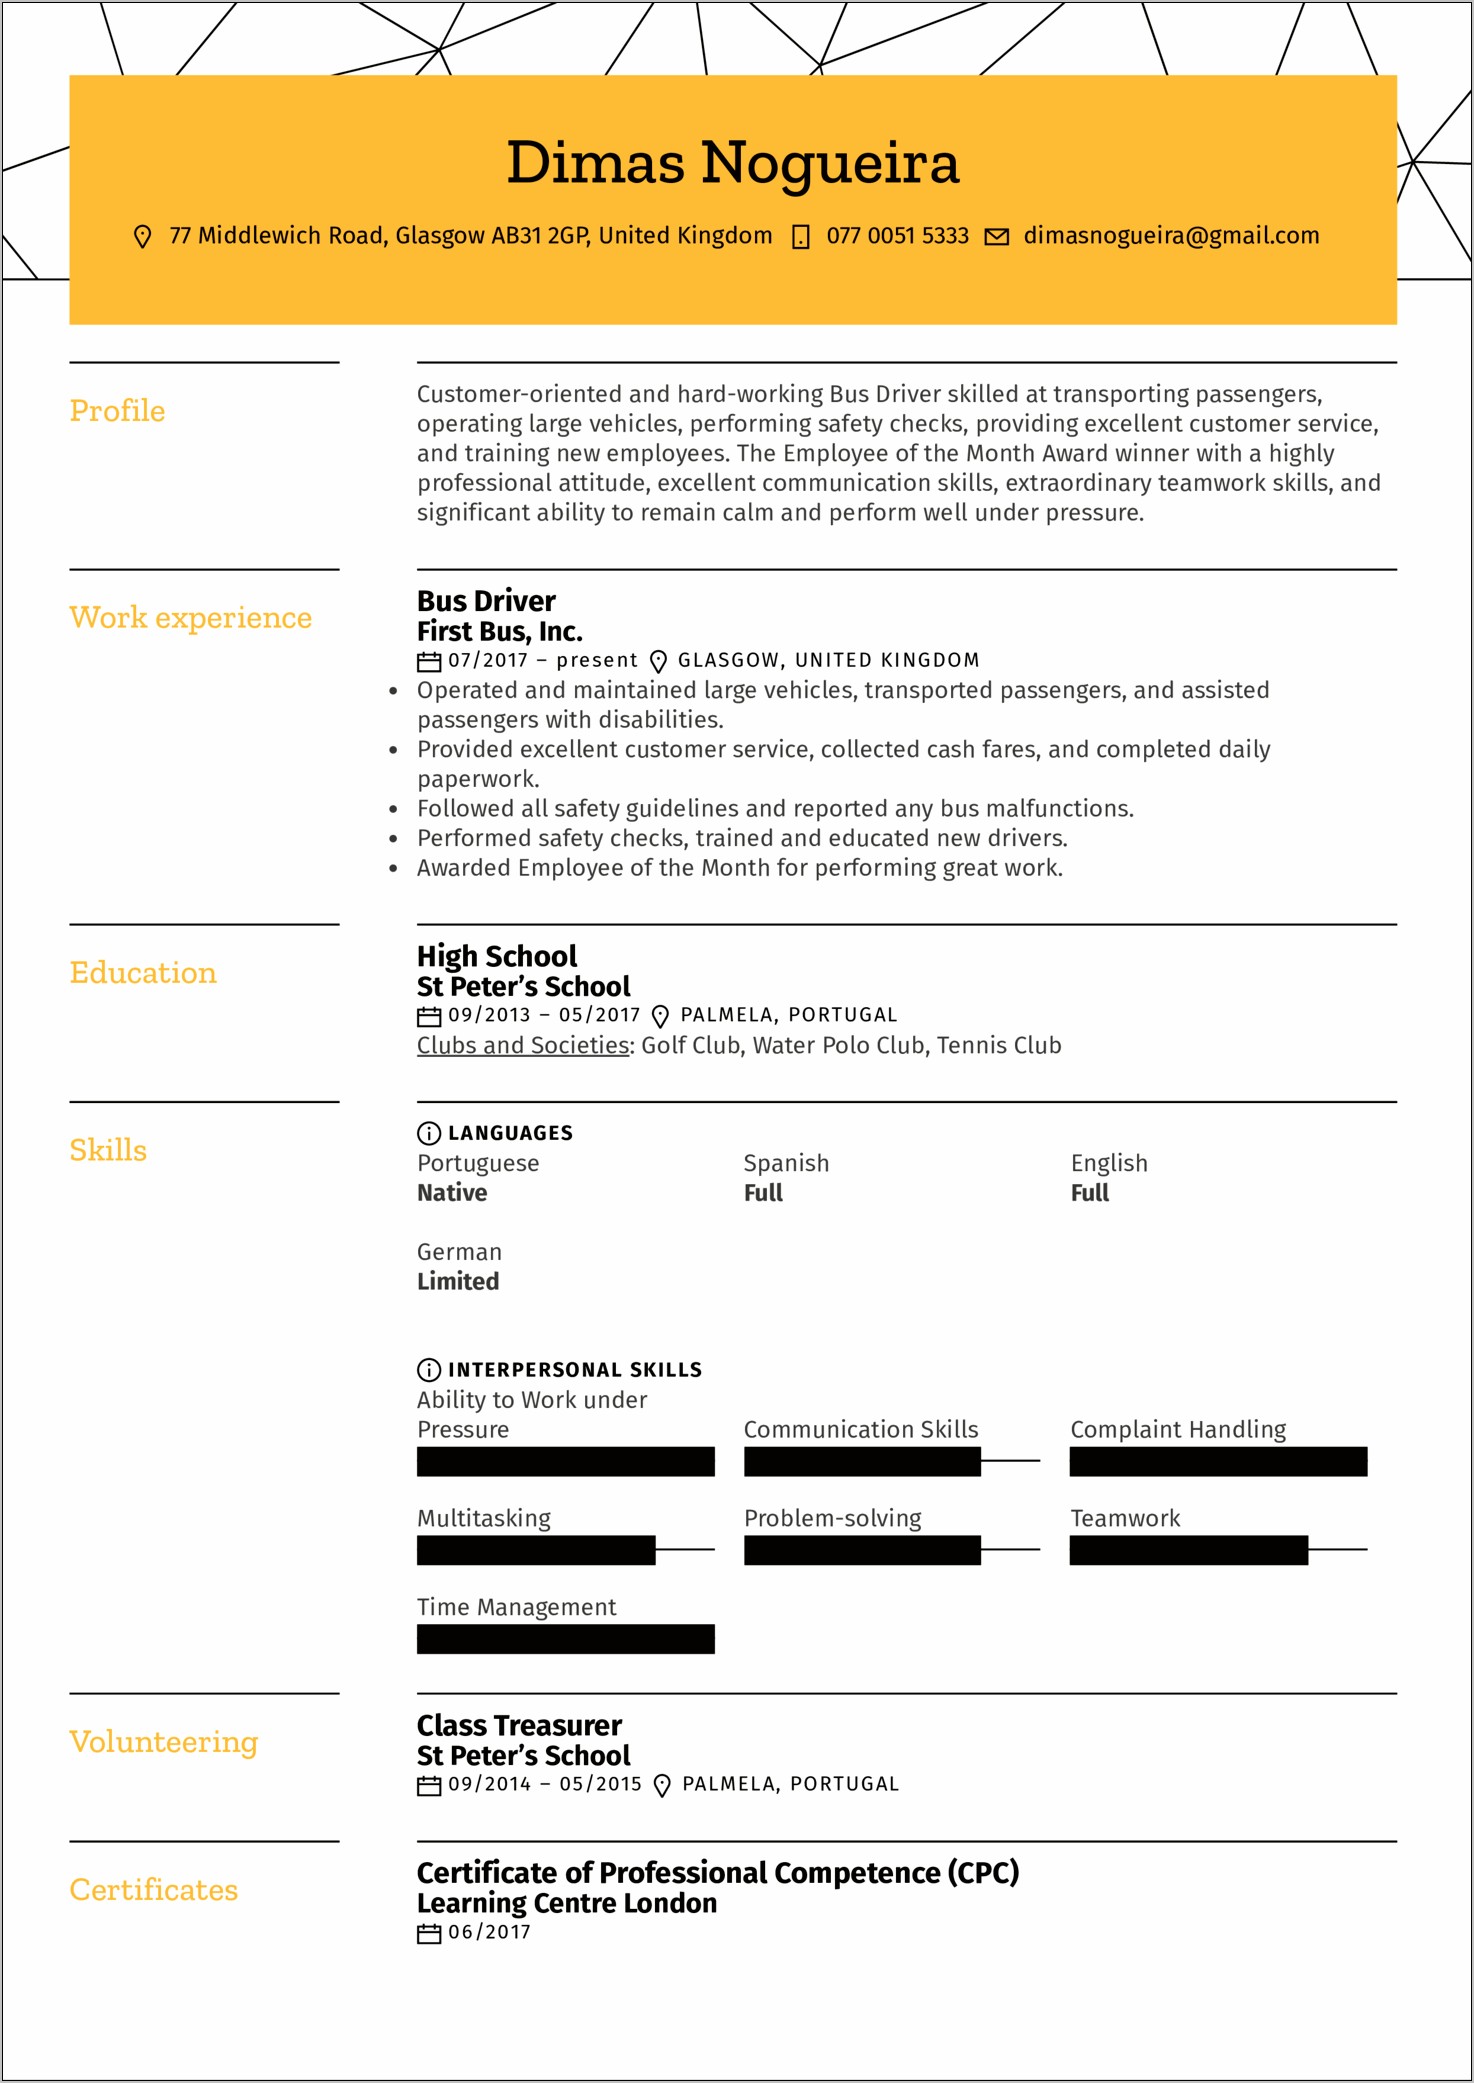 Ups Driver Job Description Resume